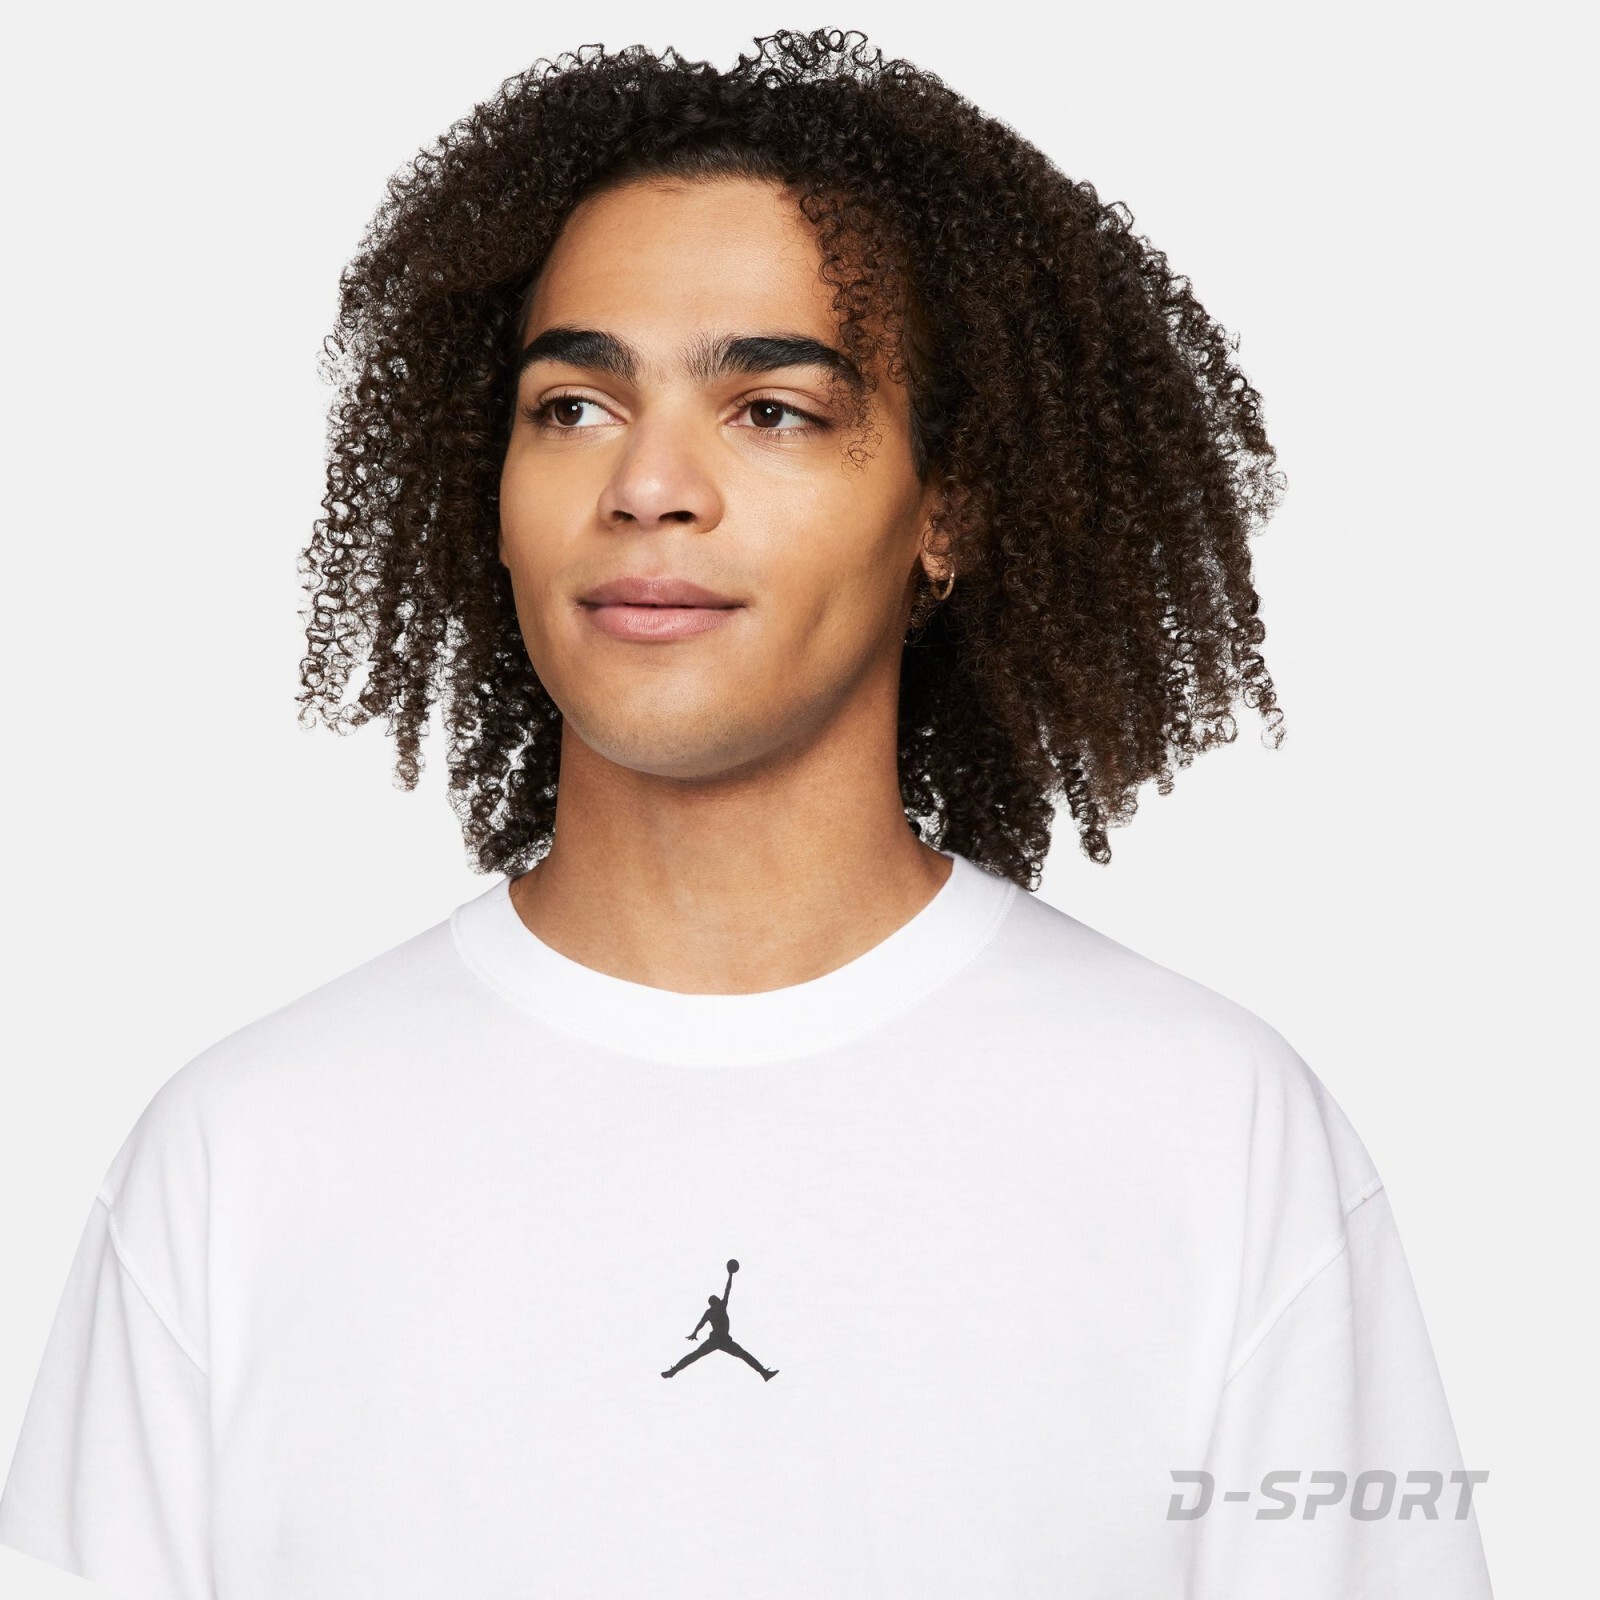 Jordan Sport Dri-FIT